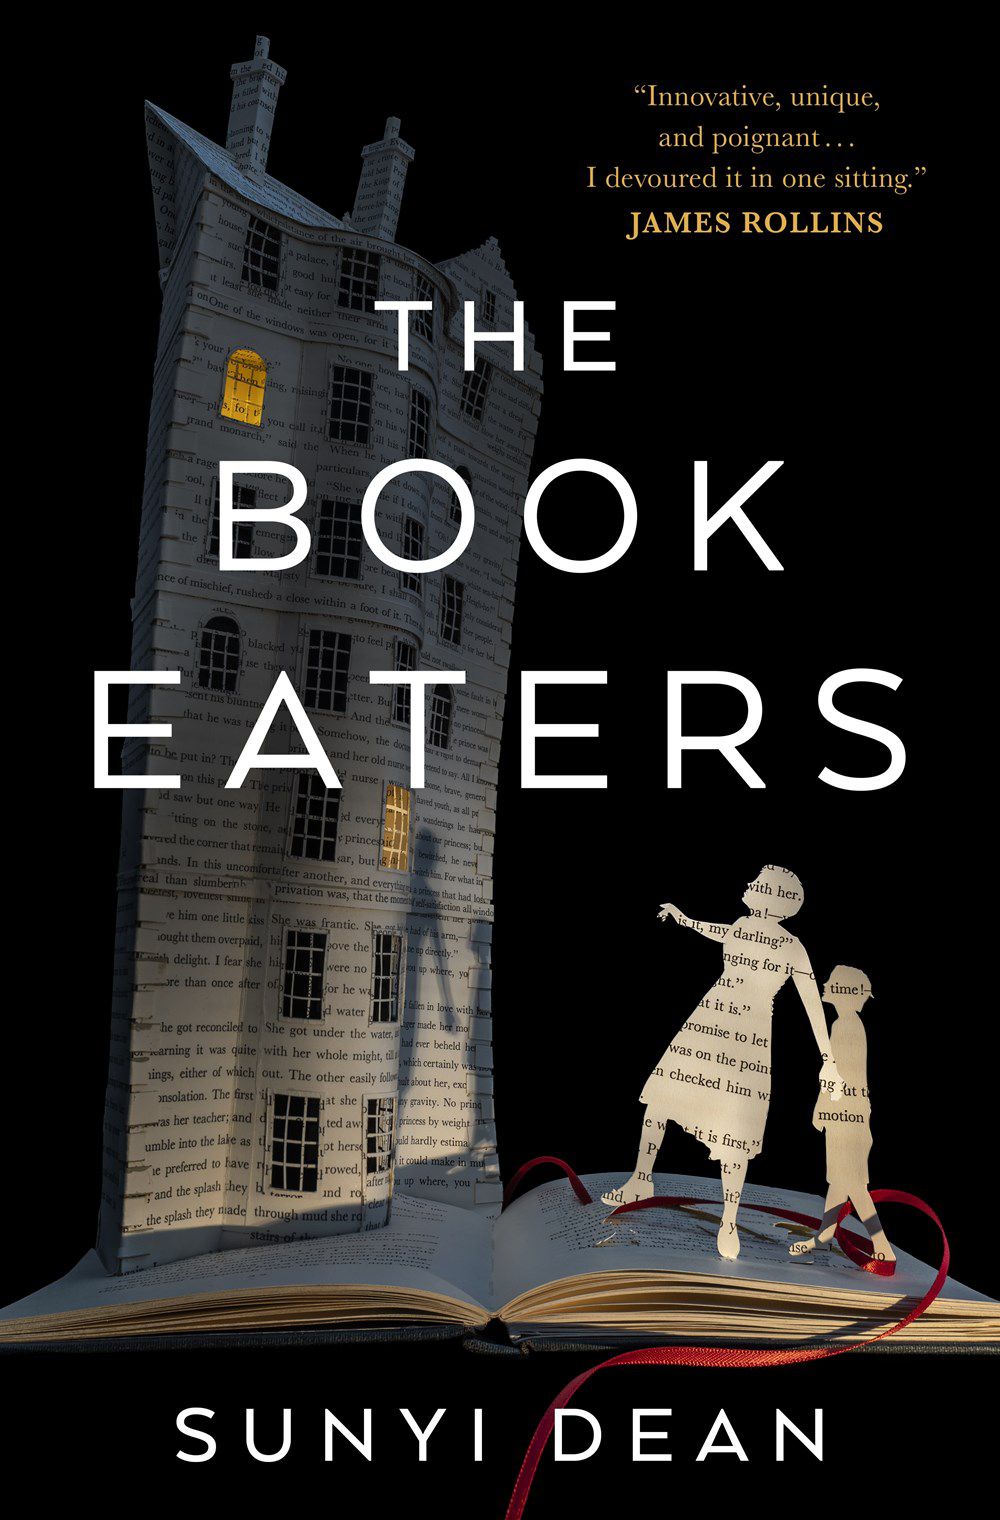 Immagine di copertina di The Book Eaters di Sunyi Dean, con l'immagine del diorama di un genitore, un figlio e una casa, tutti fatti di pagine di un libro, mentre sono in piedi su un libro.